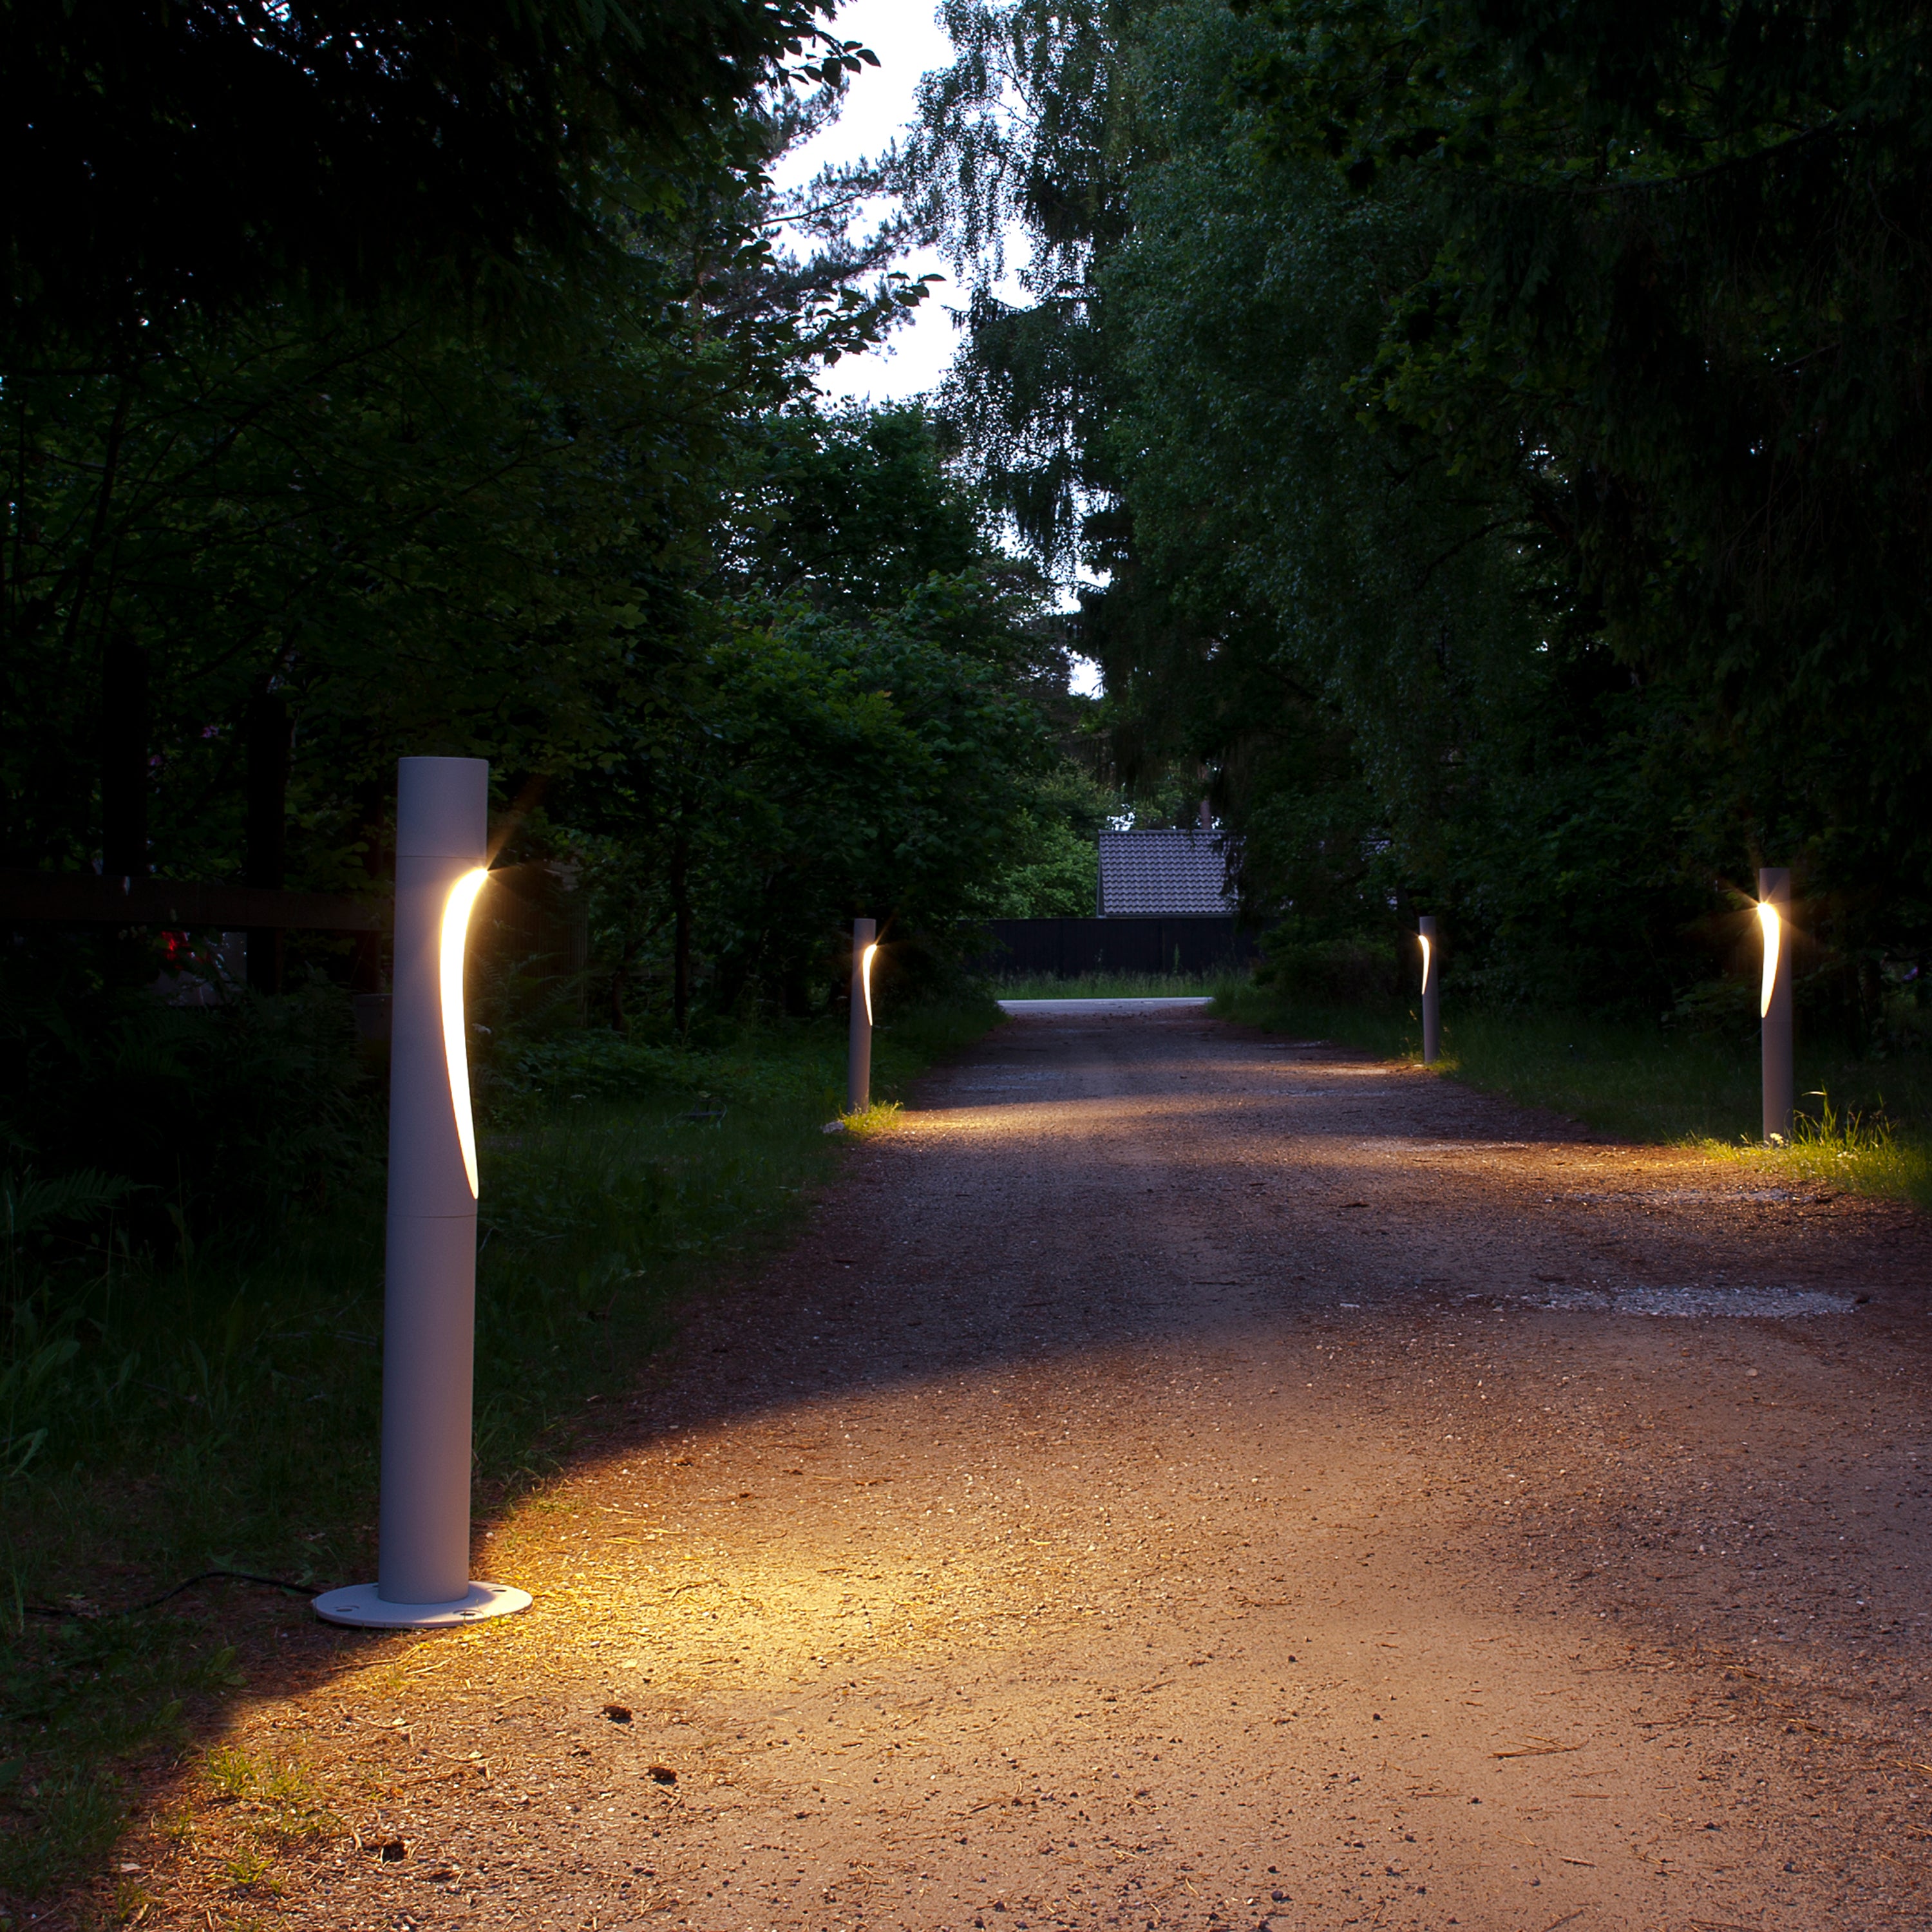 Flindt Garden Bollard Lamp: Long